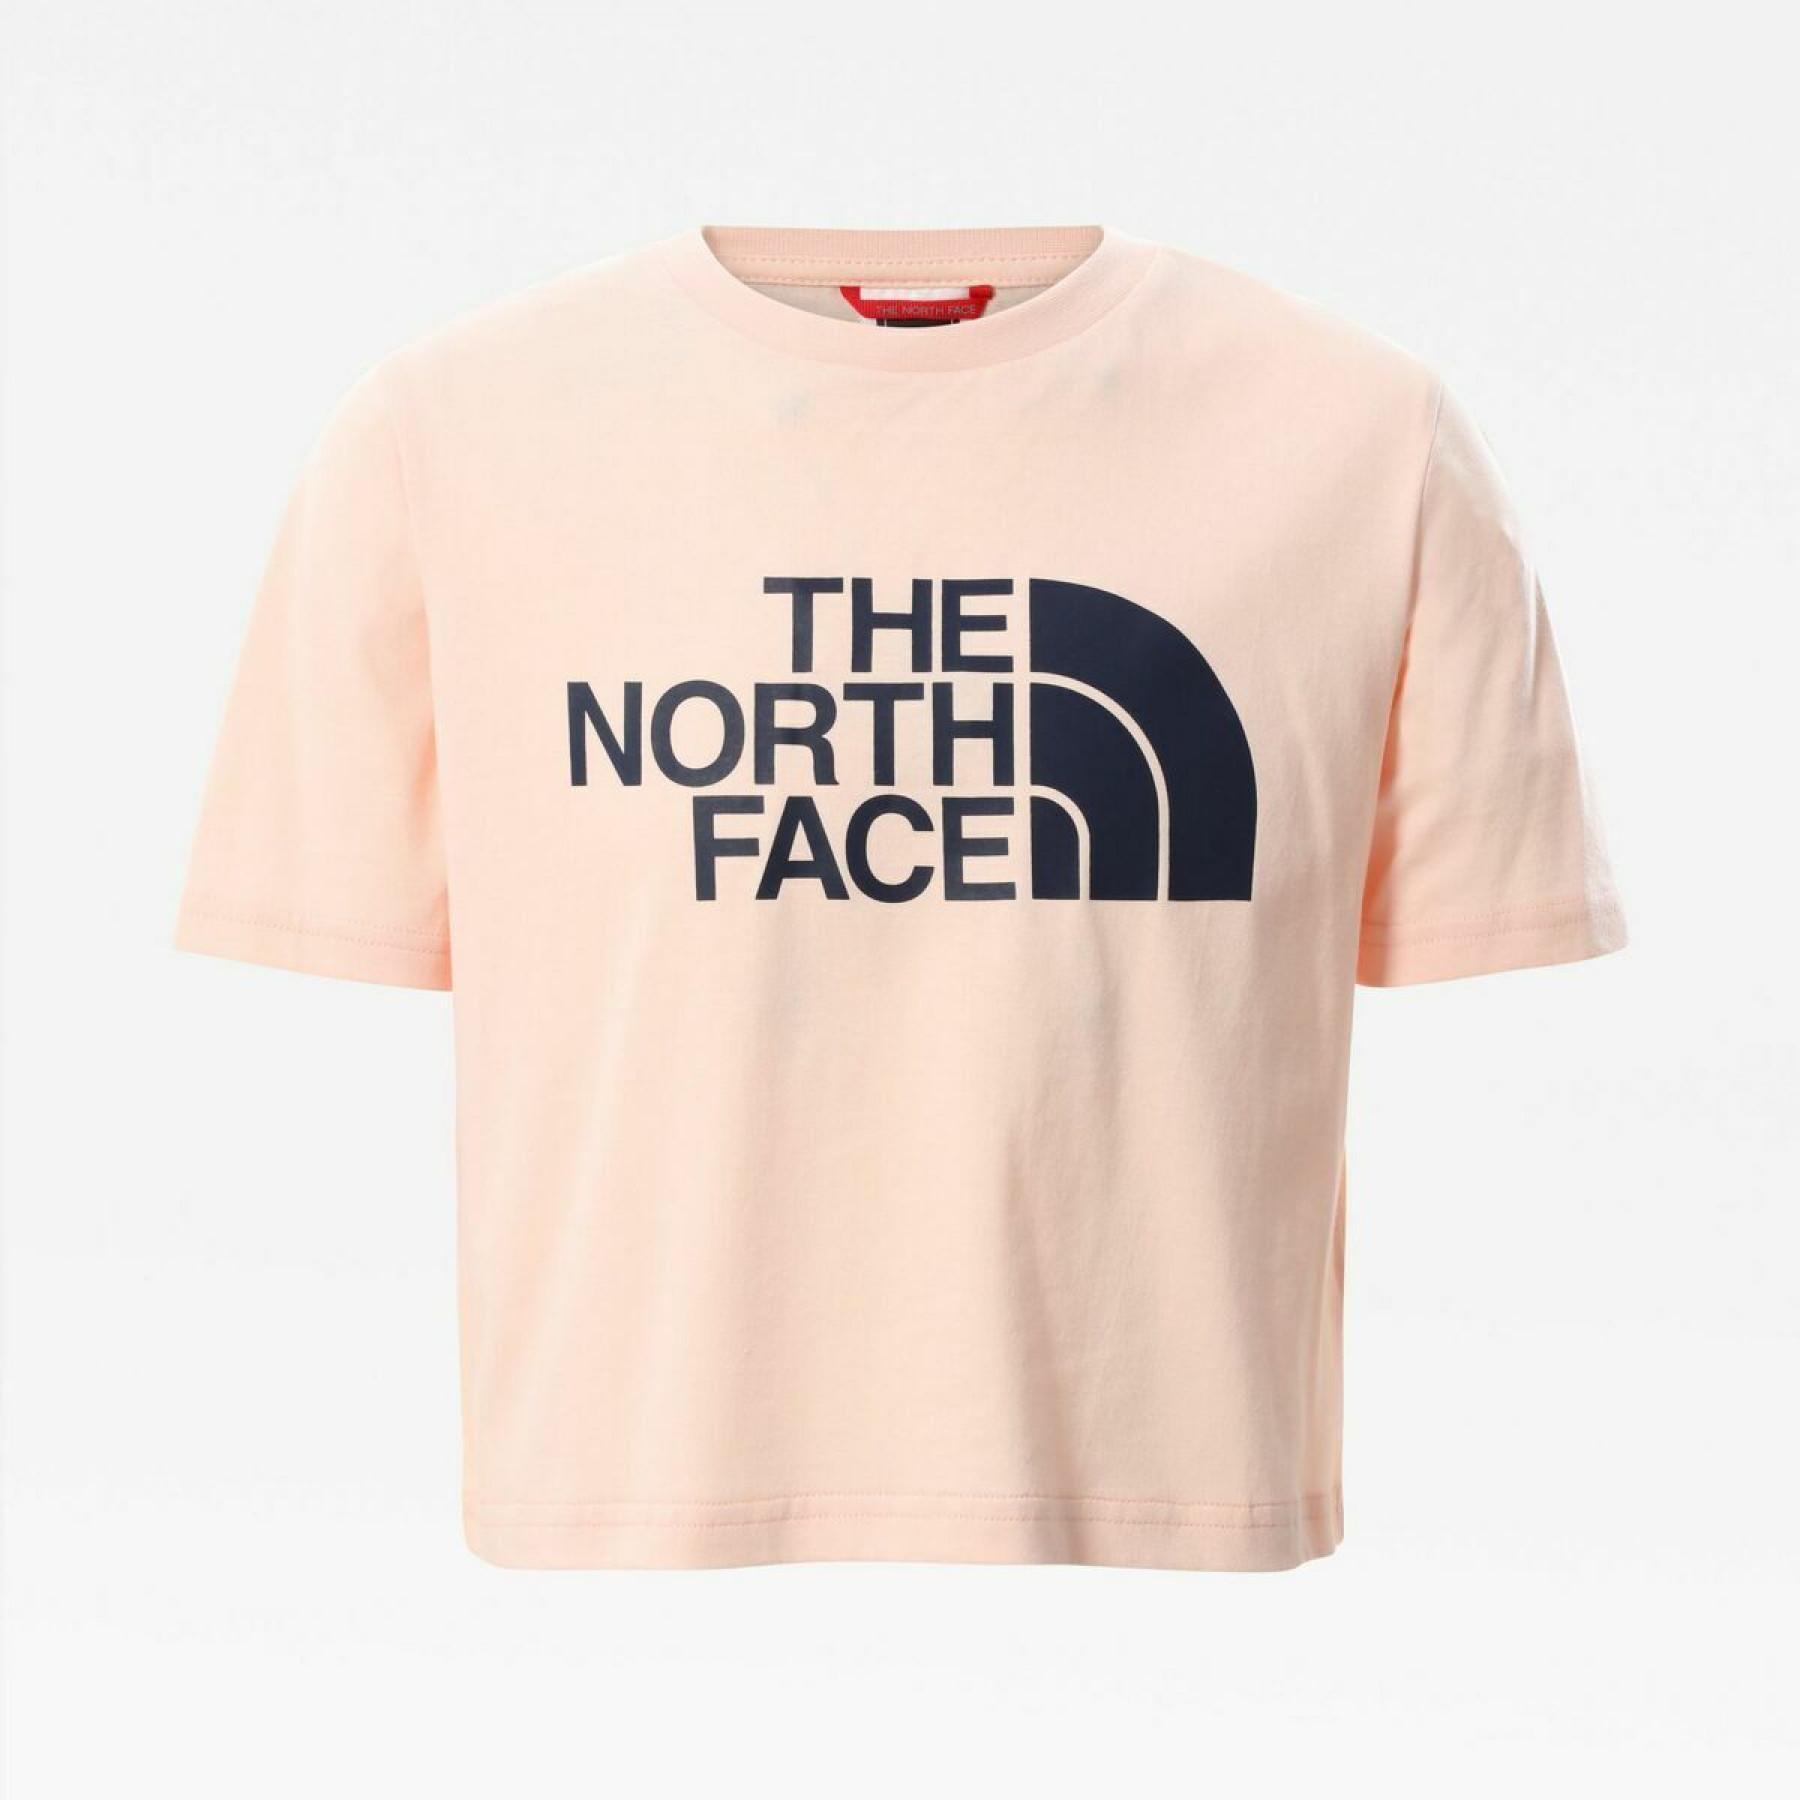 T-shirt de rapariga para a colheita The North Face Easy